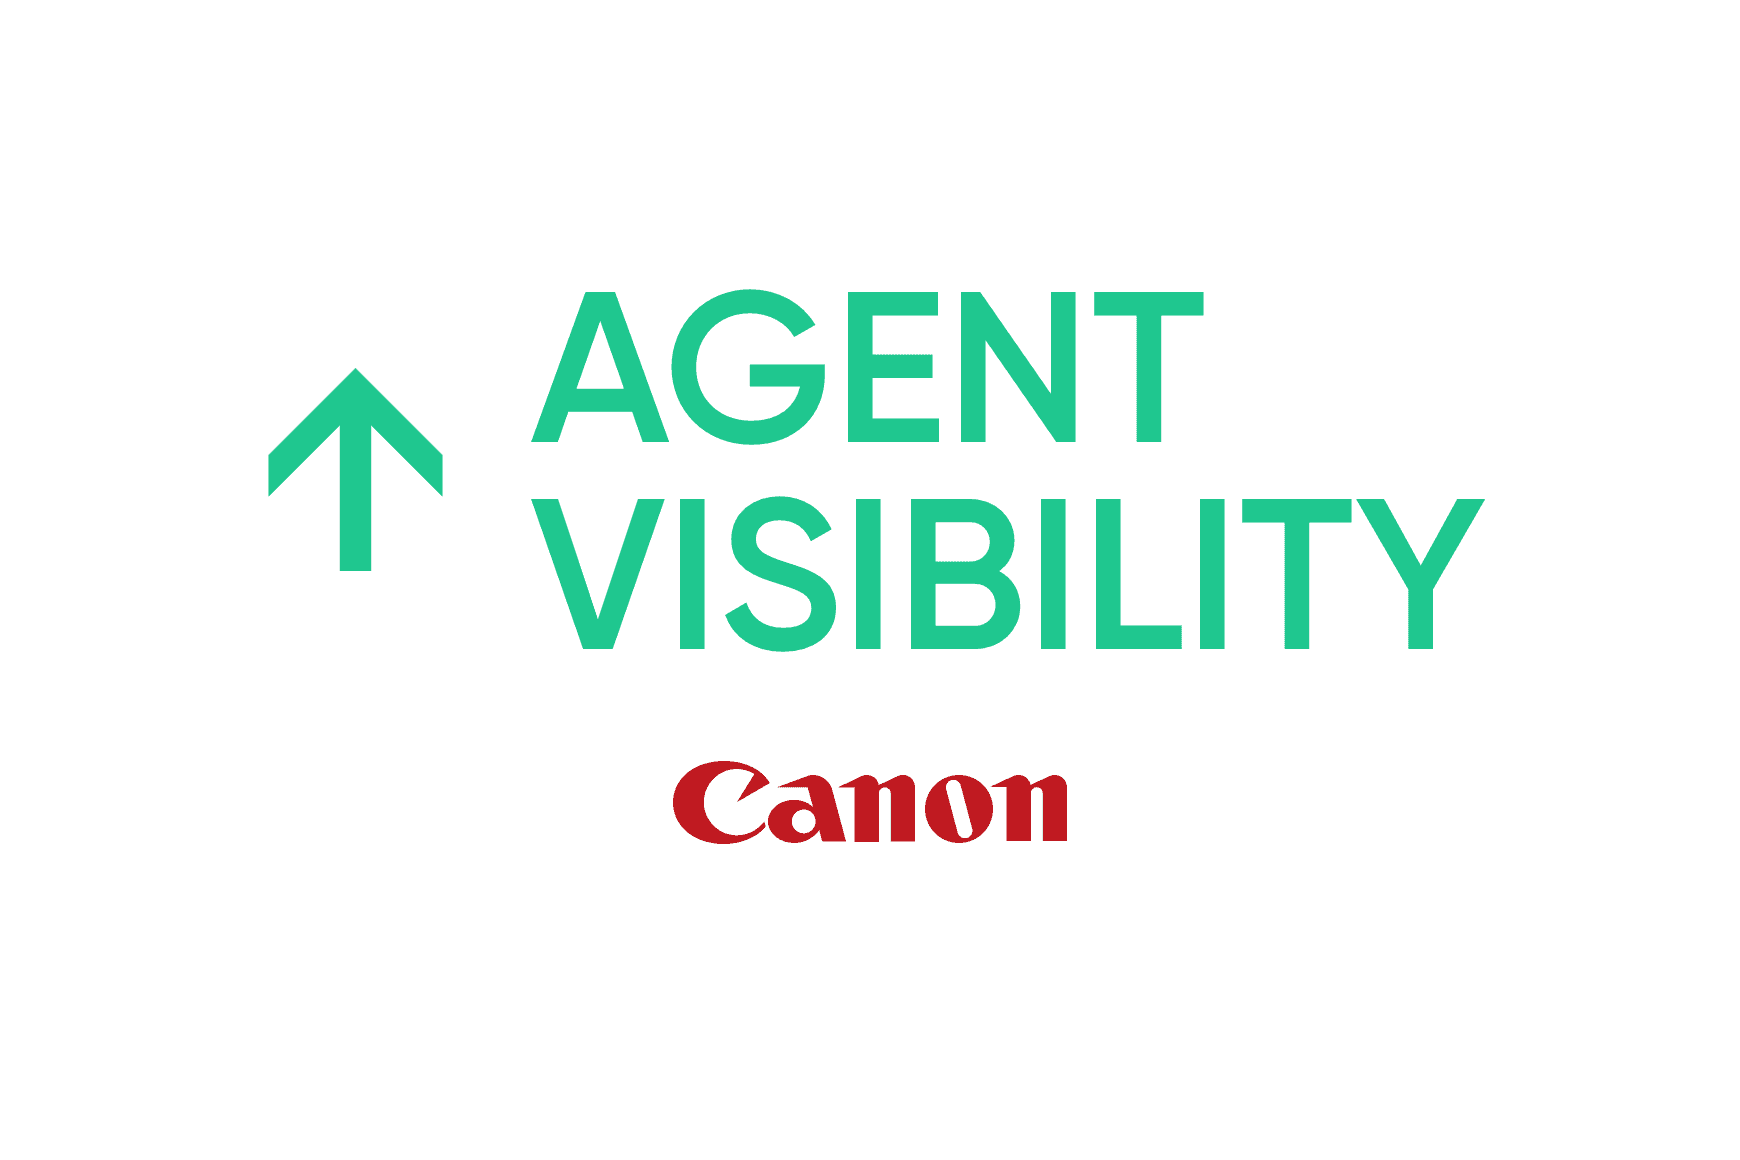 Canon: Maior produtividade e visibilidade dos agentes